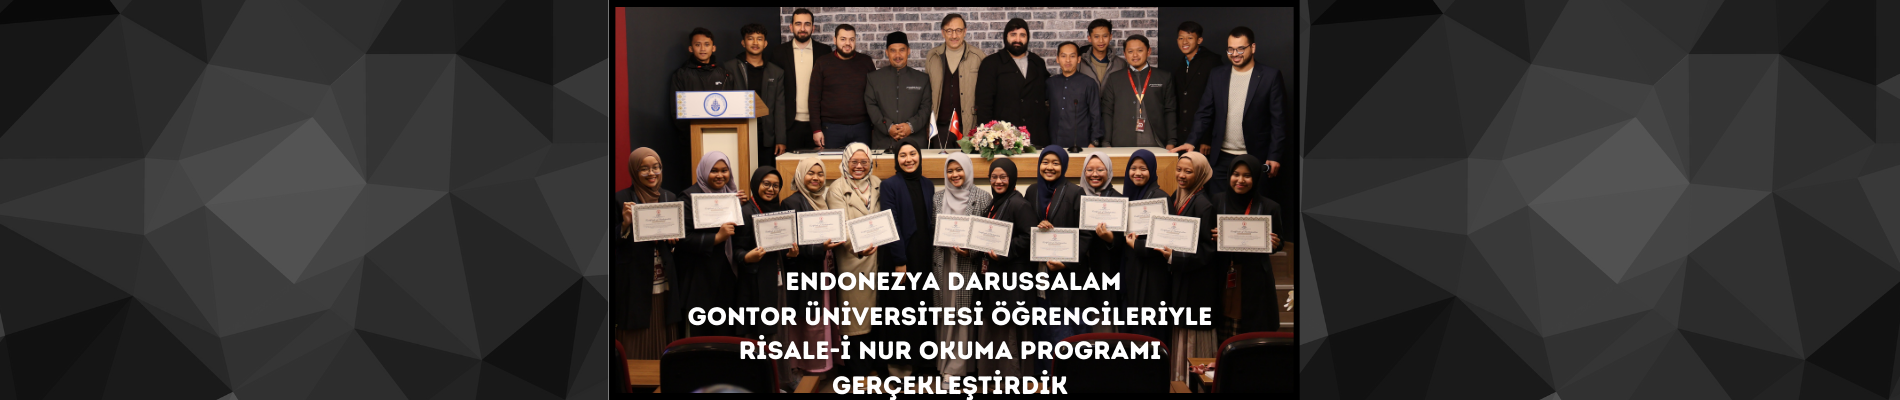 Endonezya Darussalam Gontor Üniversitesi Öğrencileriyle Risale-i Nur Okuma Programı Gerçekleştirdik